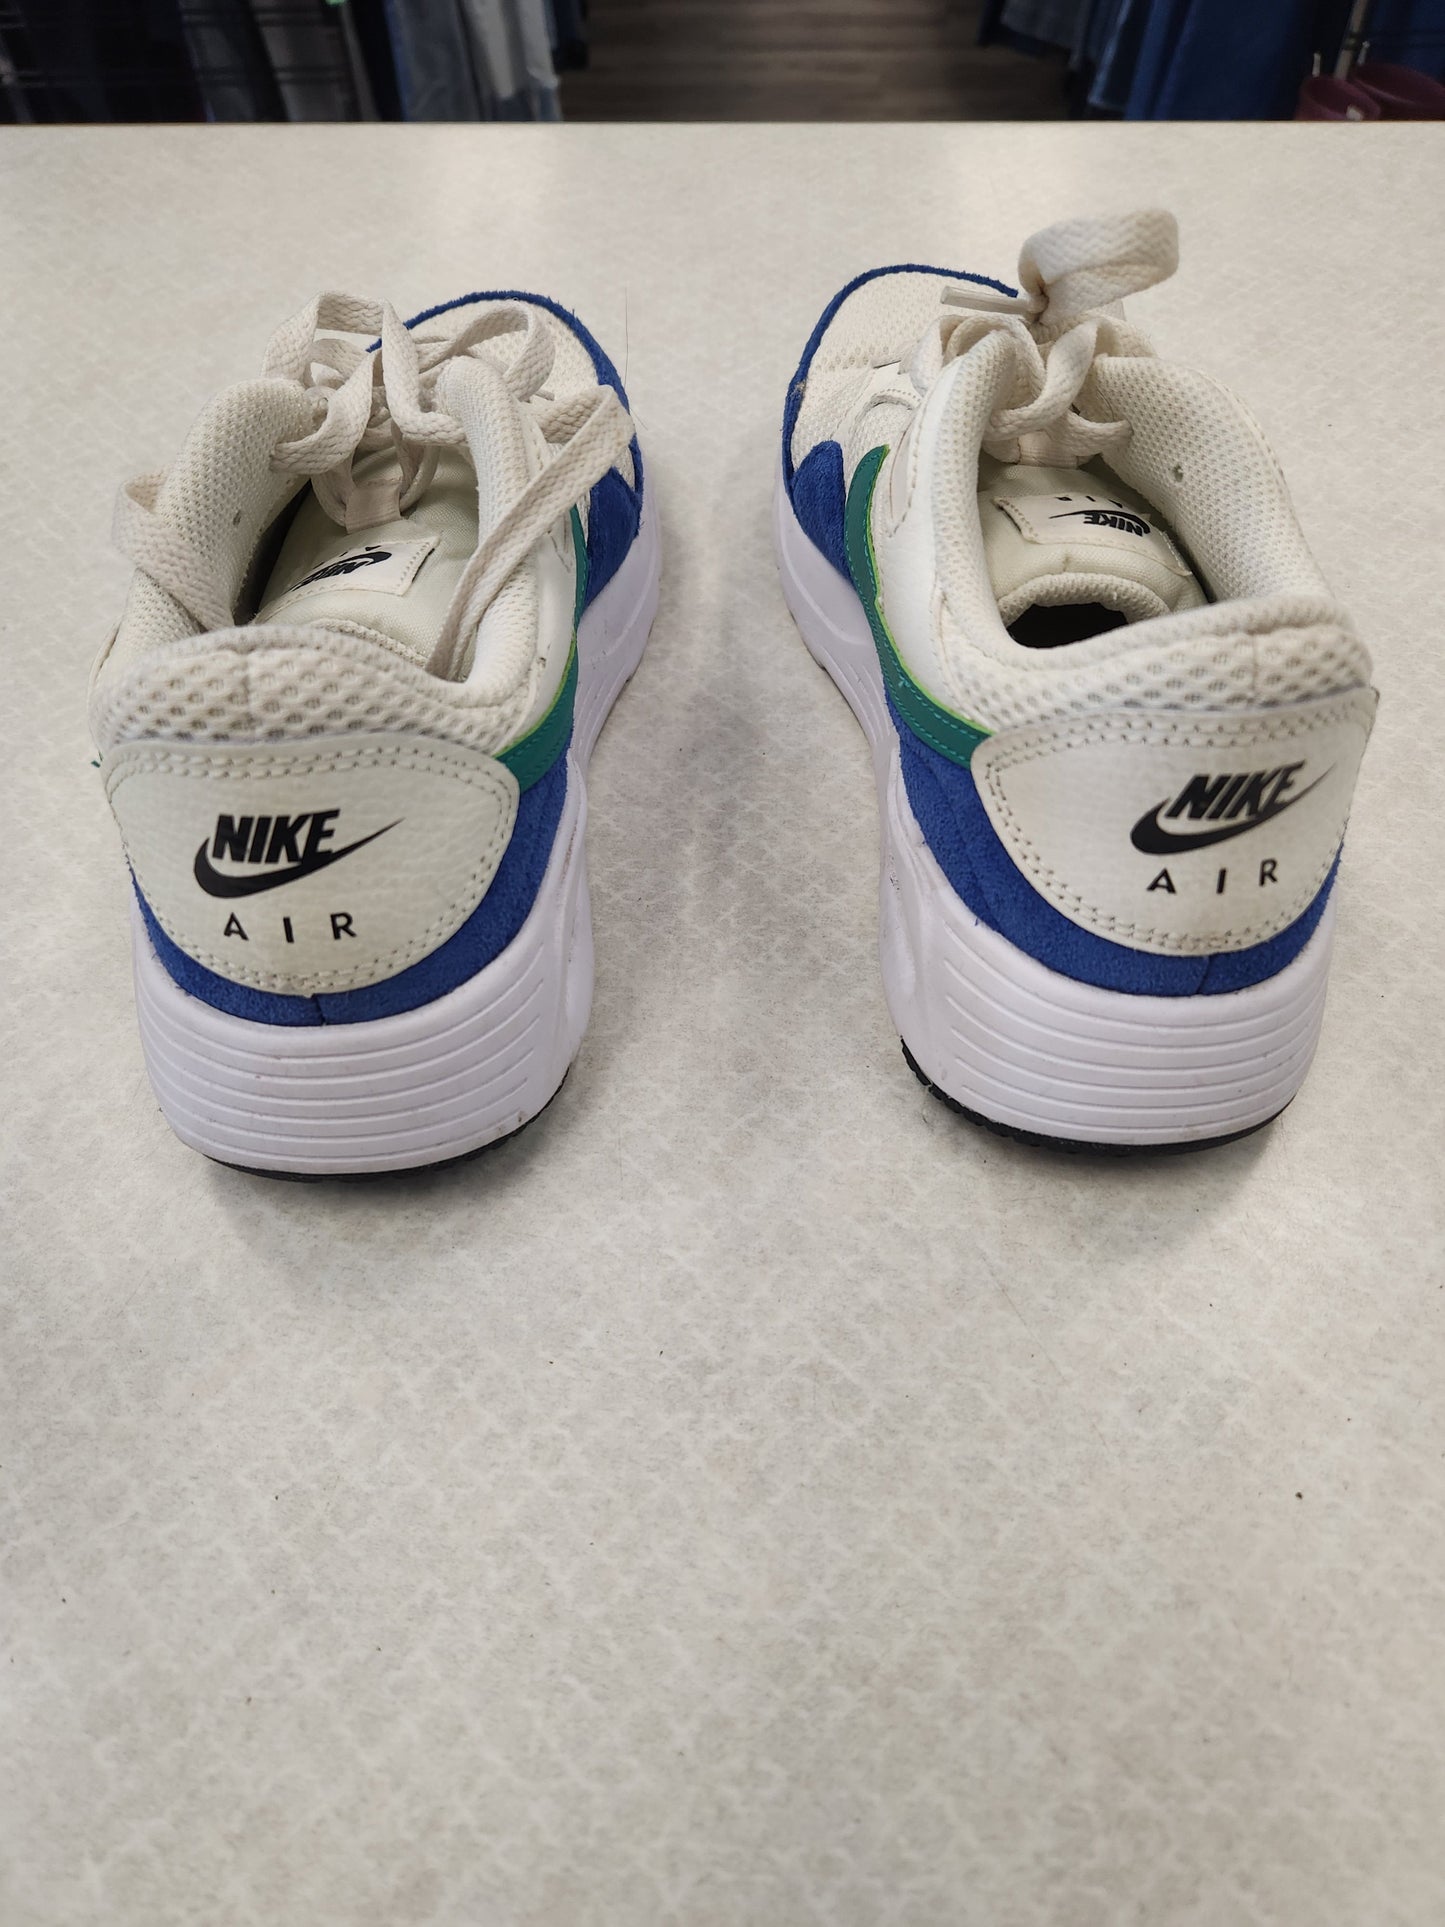 Blue & White Shoes Athletic Nike, Size 7.5